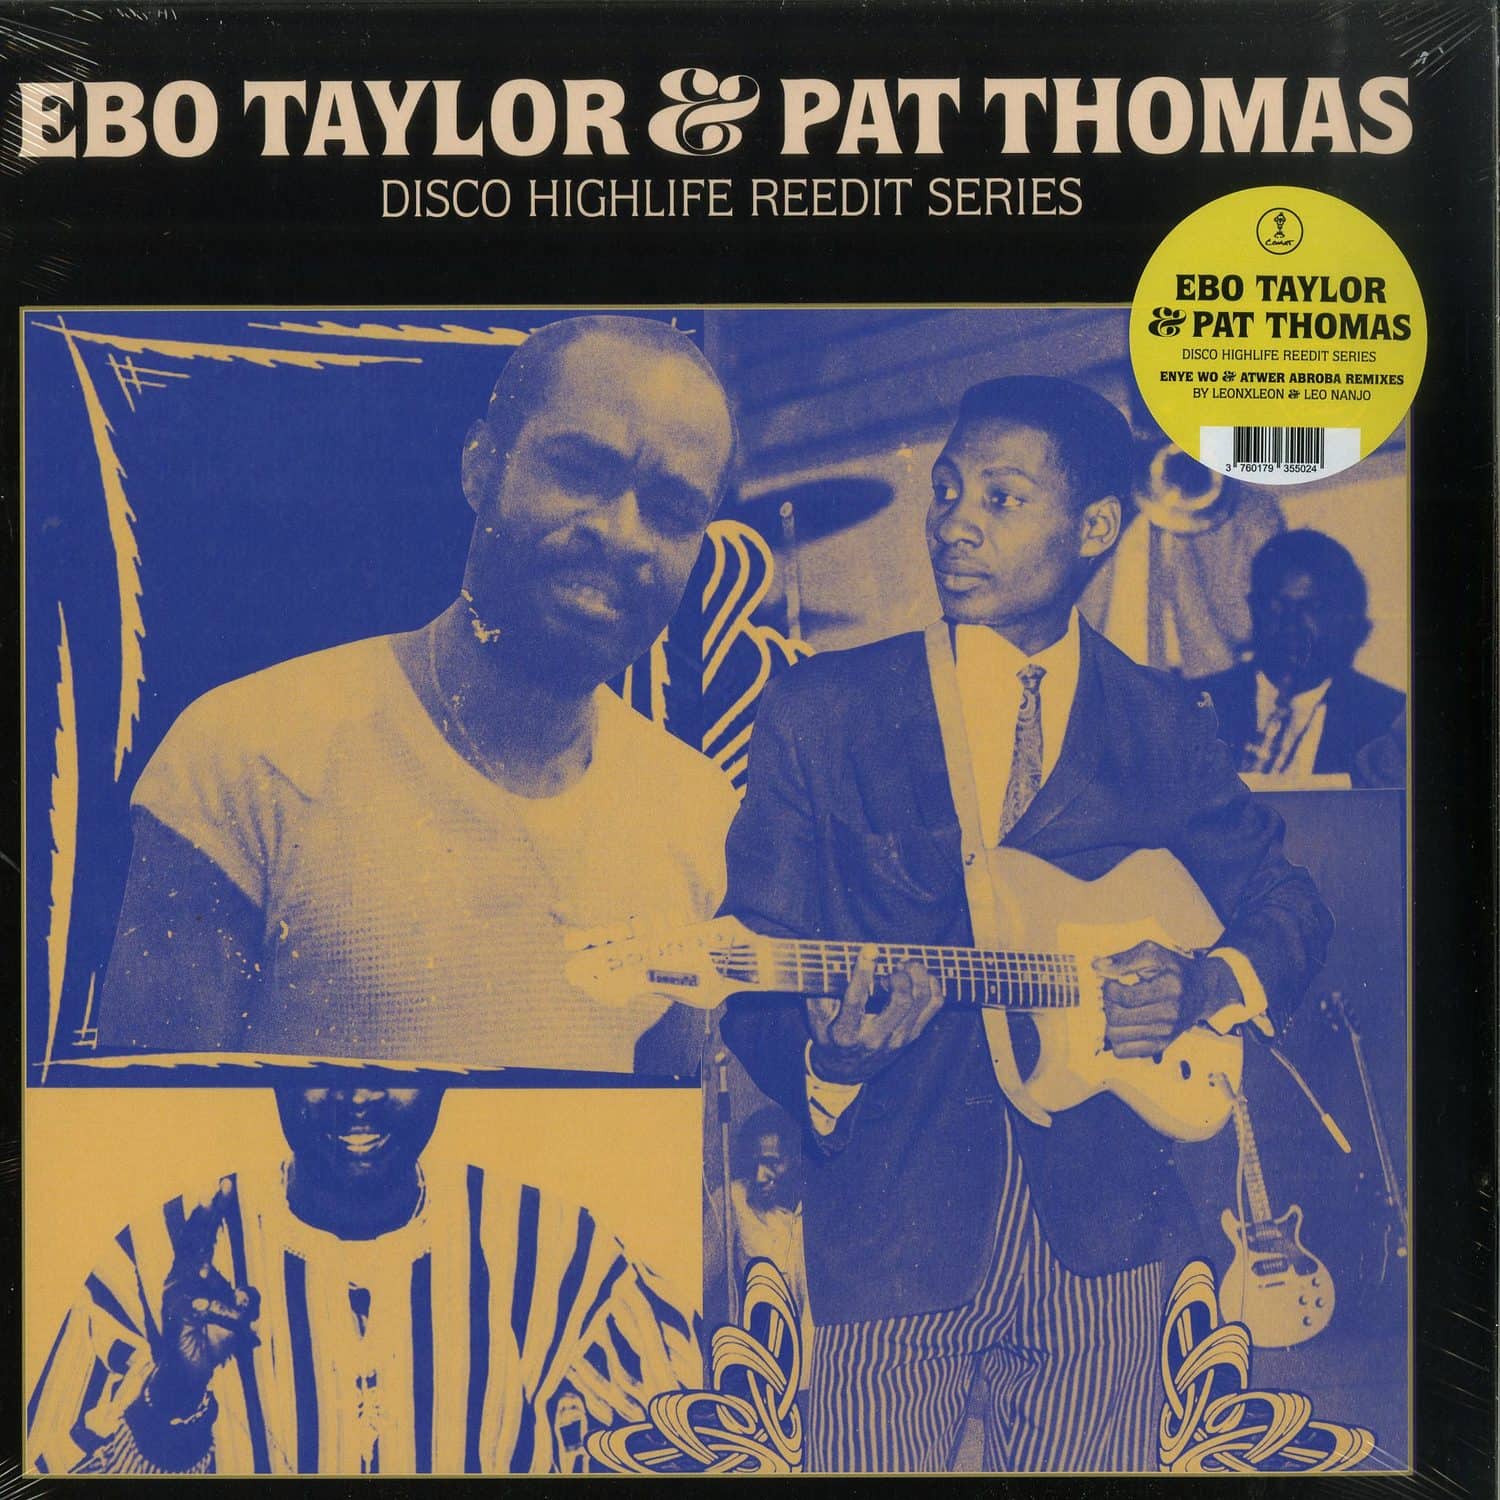 Ebo Taylor & Pat Thomas - DISCO HIGHLIFE REEDIT SERIES